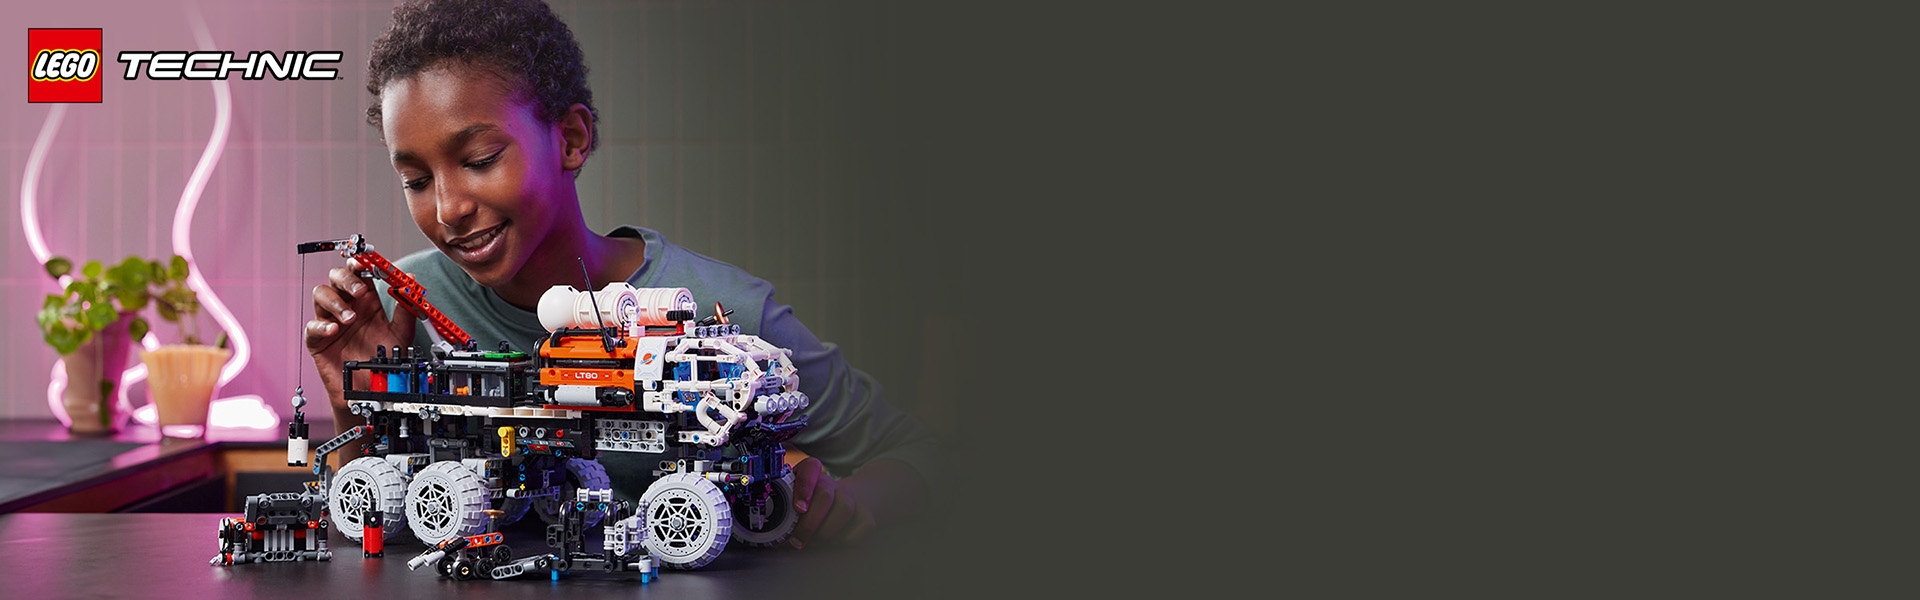 火星船員探測車42180 | 科技| LEGO®台灣官方網站